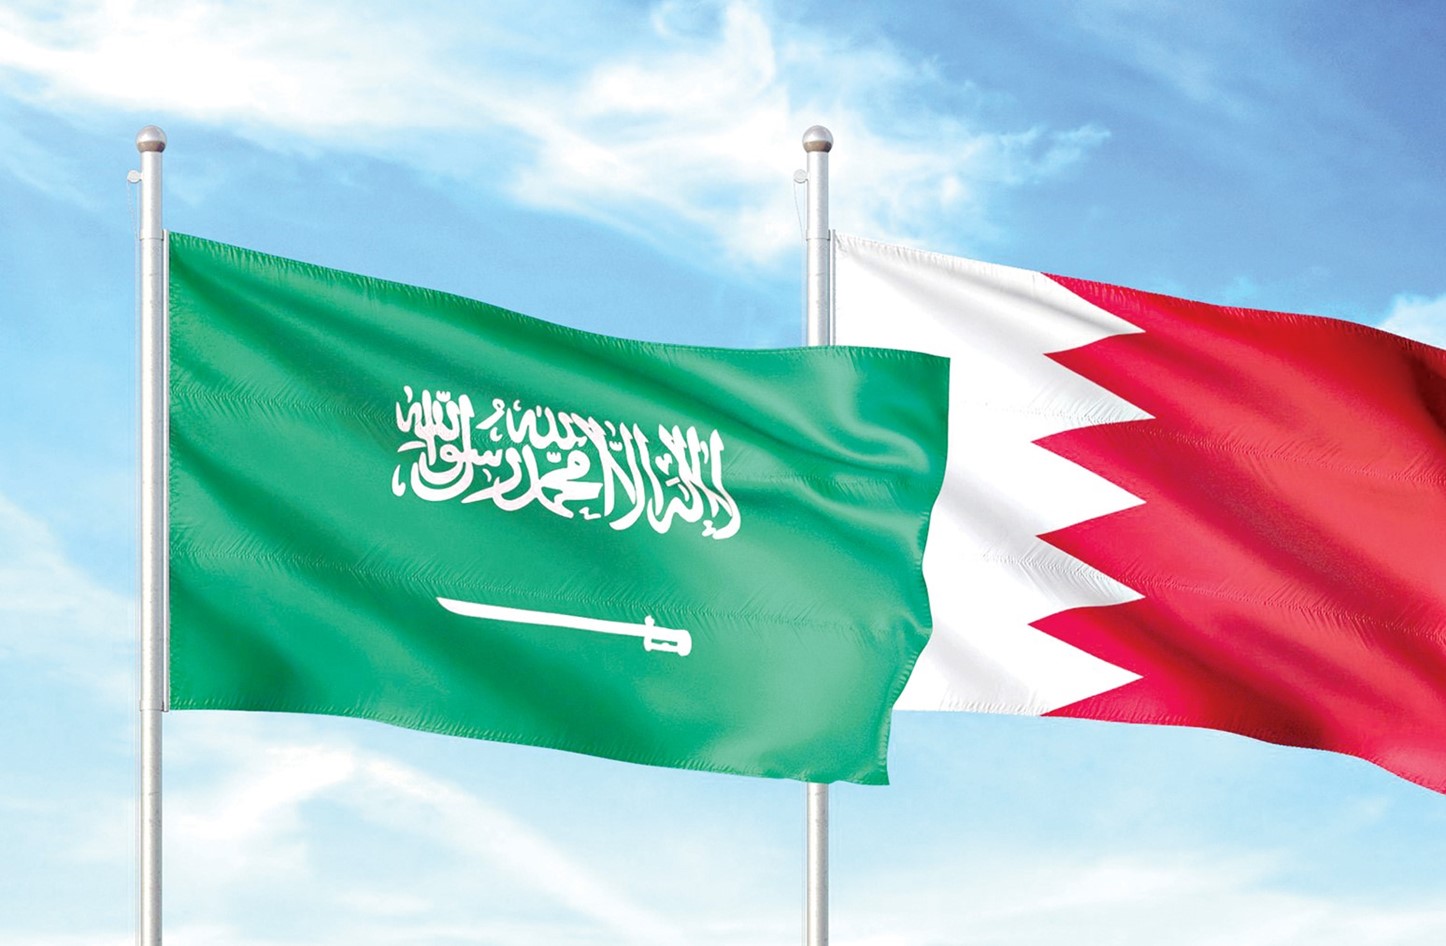 وزير الإعلام البحريني: السعودية الحليف السياسي والأمني والاقتصادي الأول للبحرين